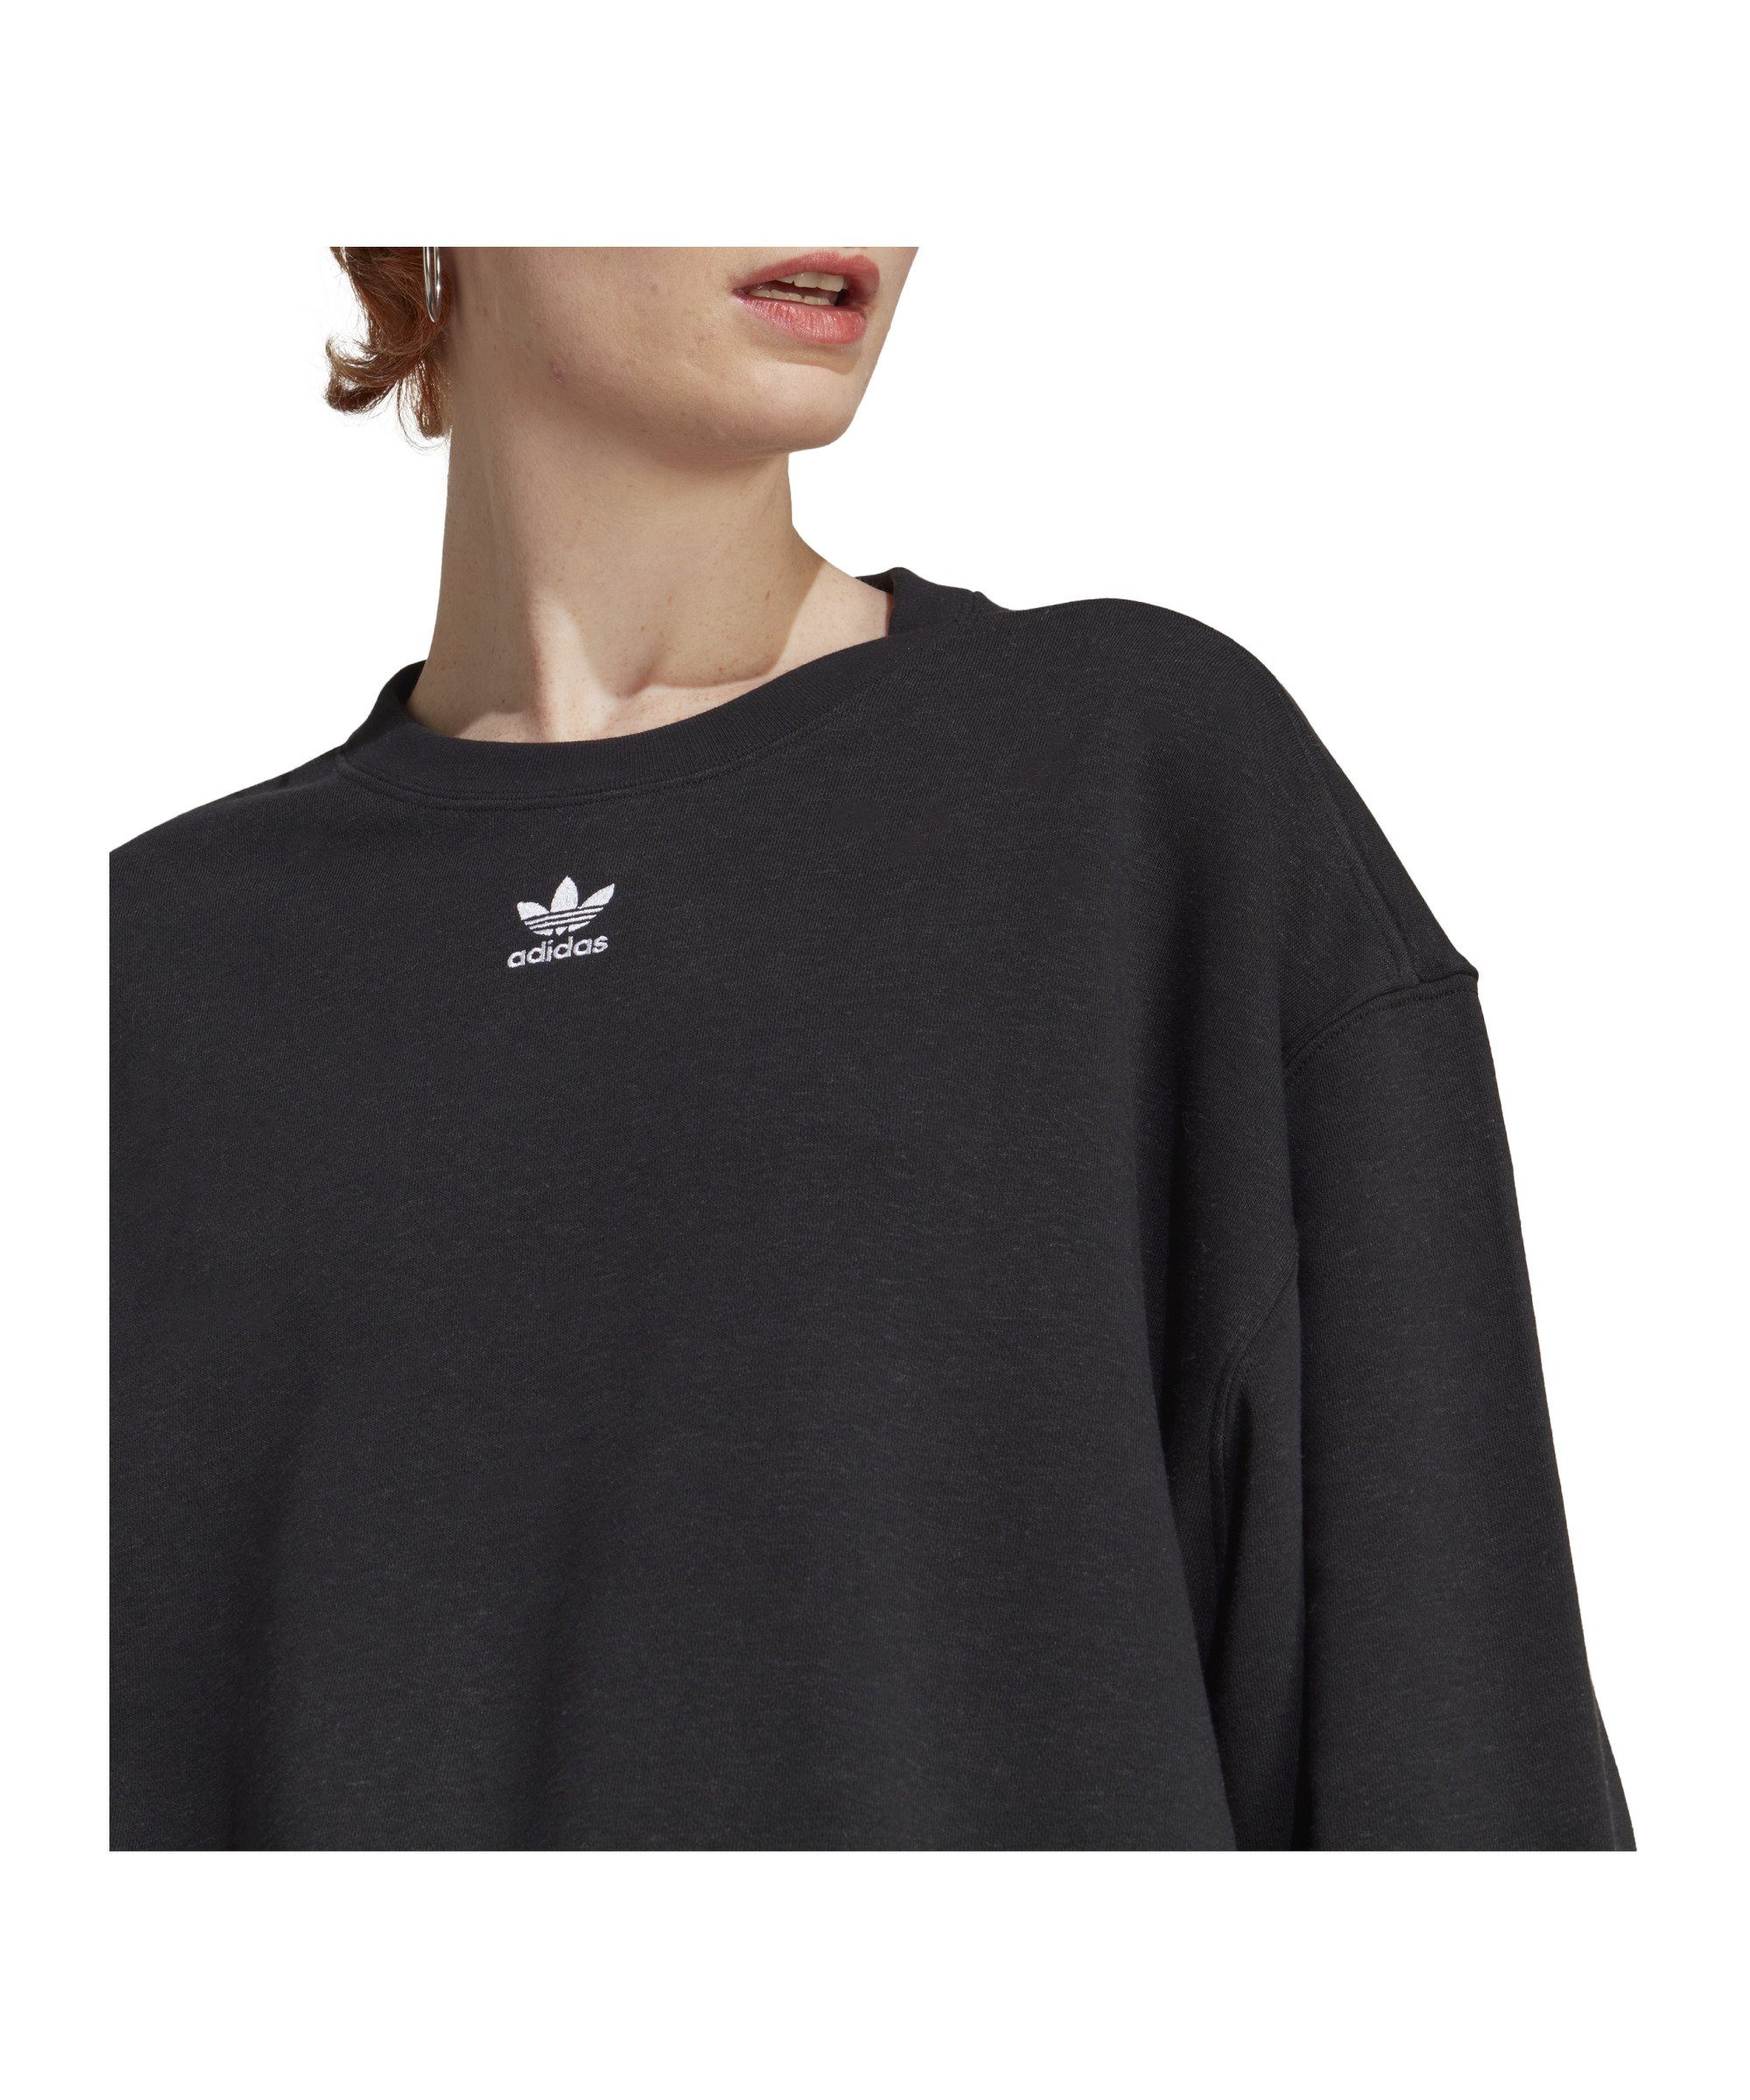 adidas Originals Sweater Damen schwarz Ess. Sweatshirt